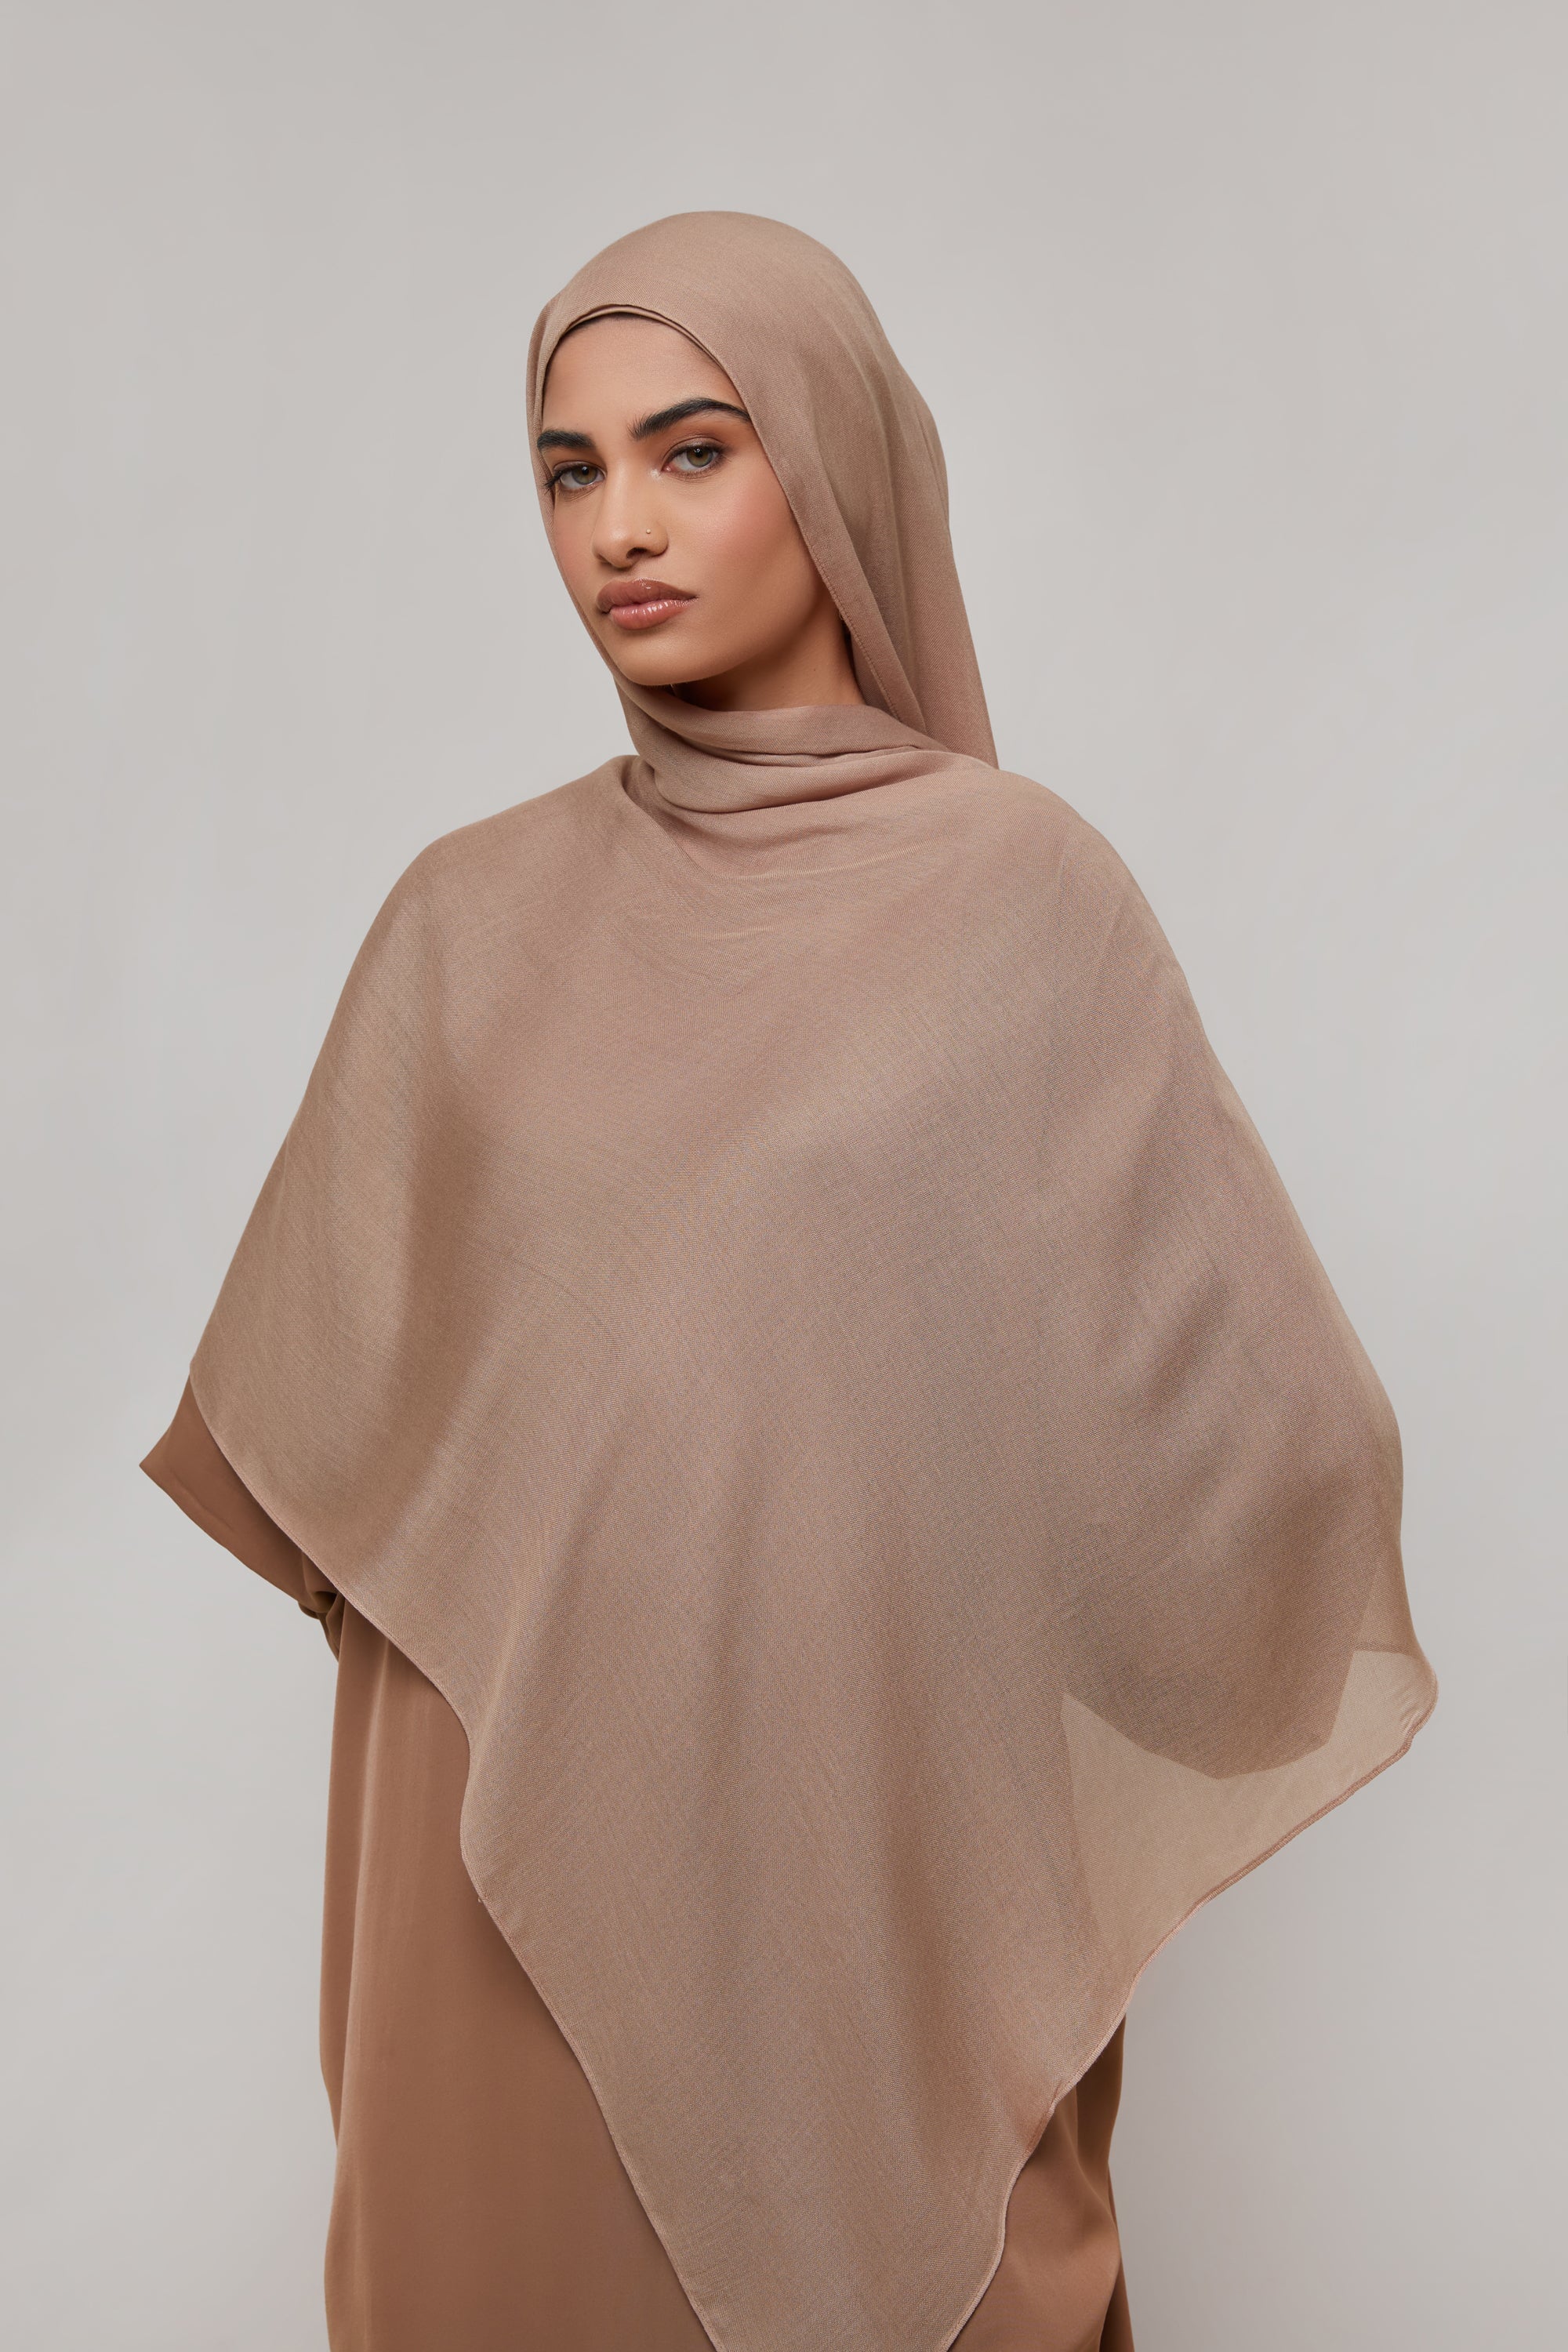 Bamboo Woven Hijab - Natural Veiled 